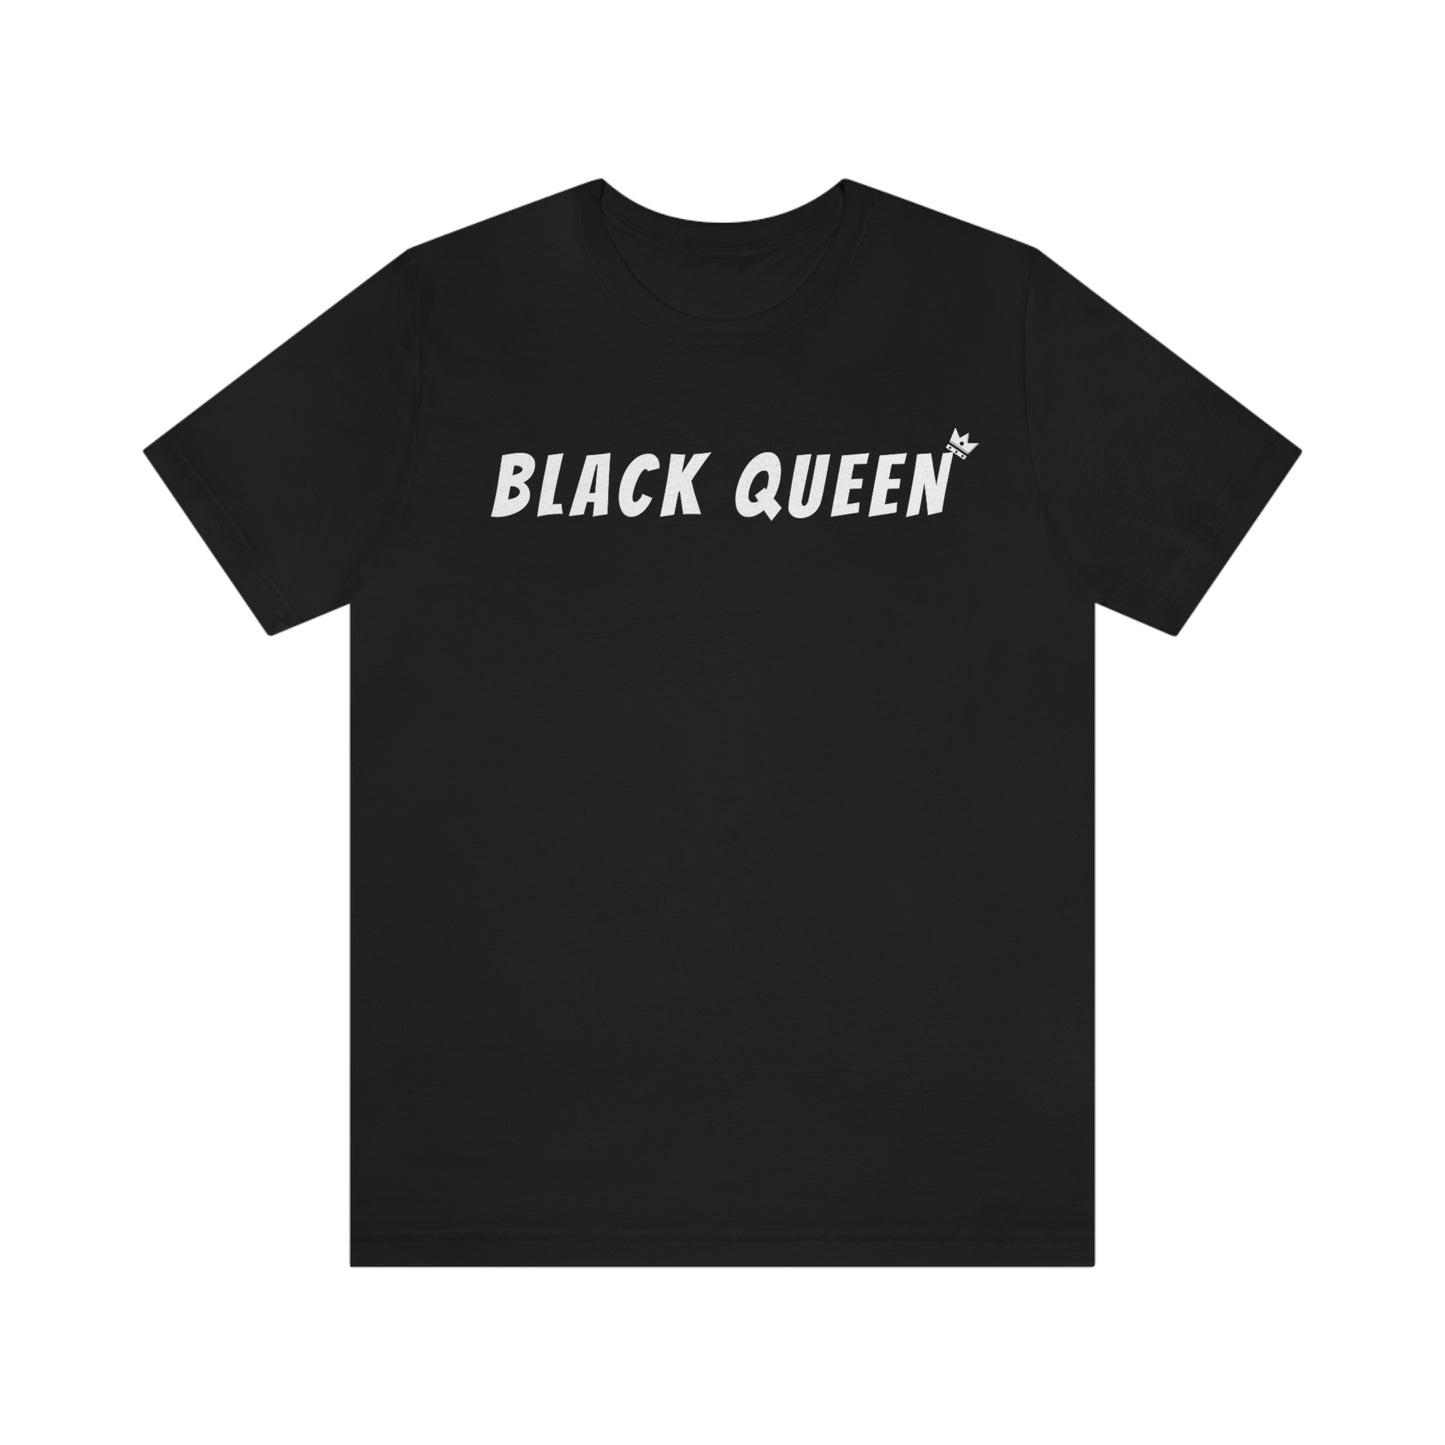 Black Queen Tee - Black